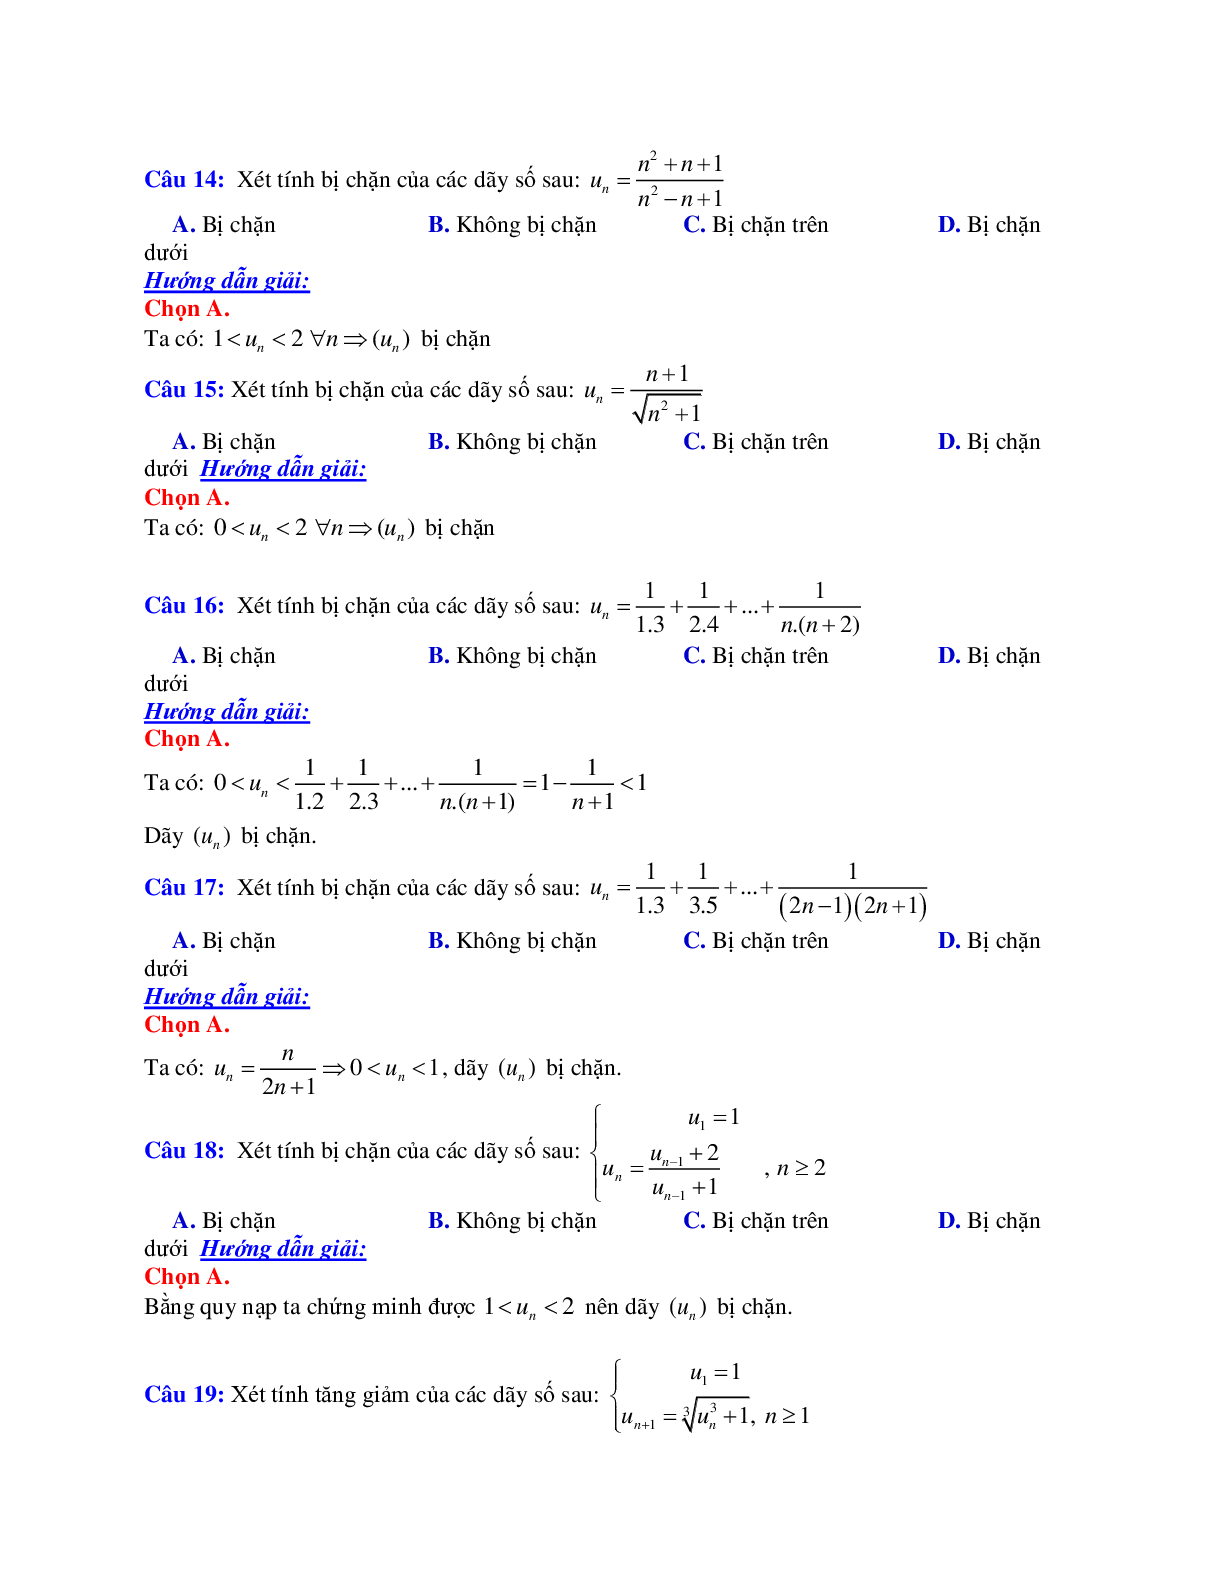 Phương pháp giải và bài tập về Cách xét tính đơn điệu, tính bị chặn của dãy số (trang 5)